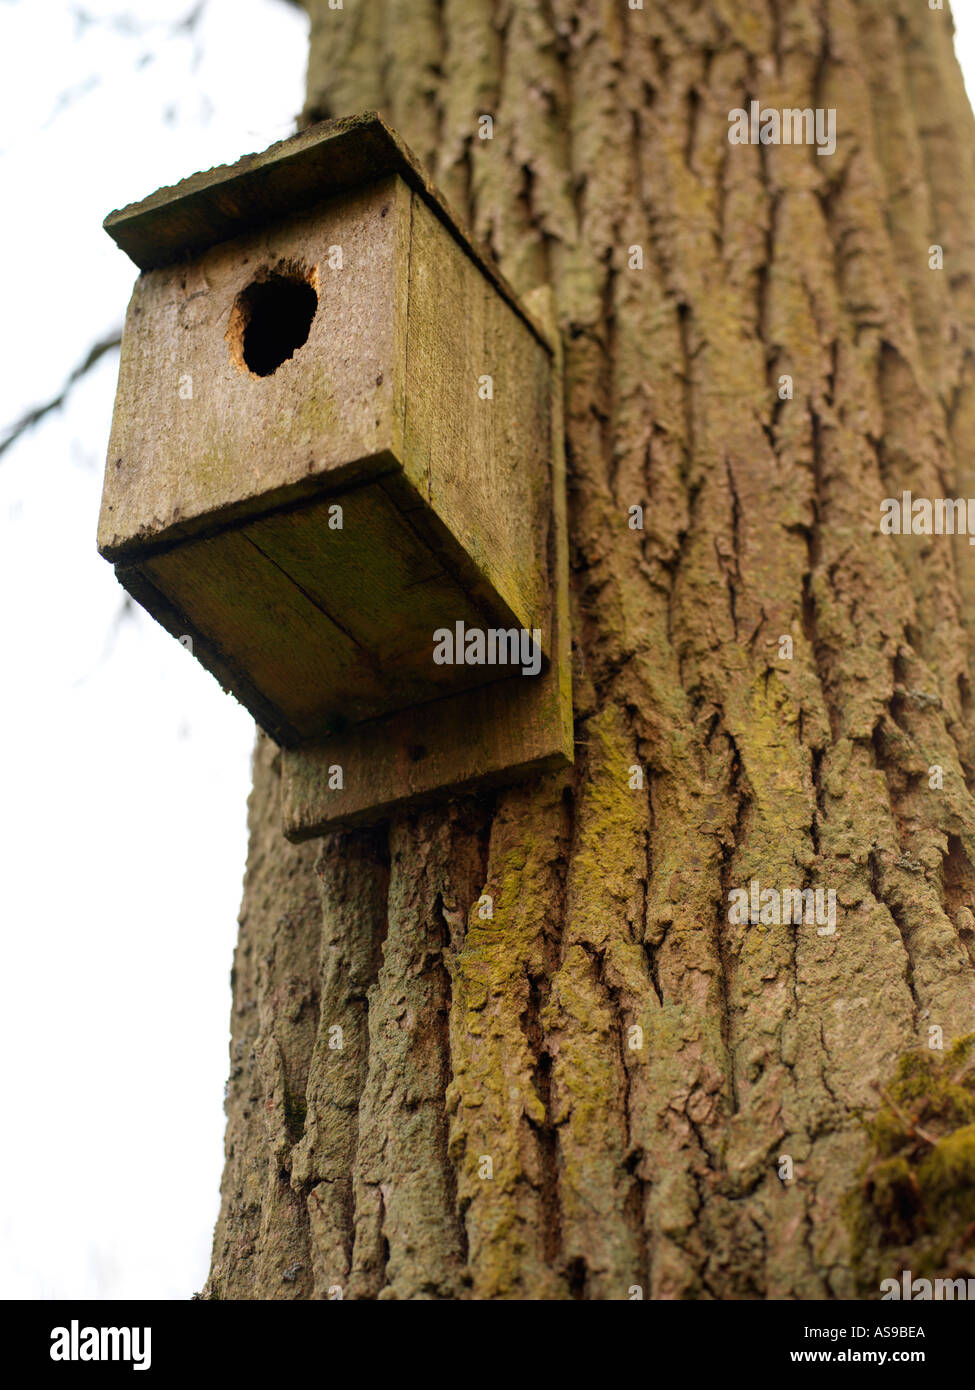 wooden bird box on tree Stock Photo